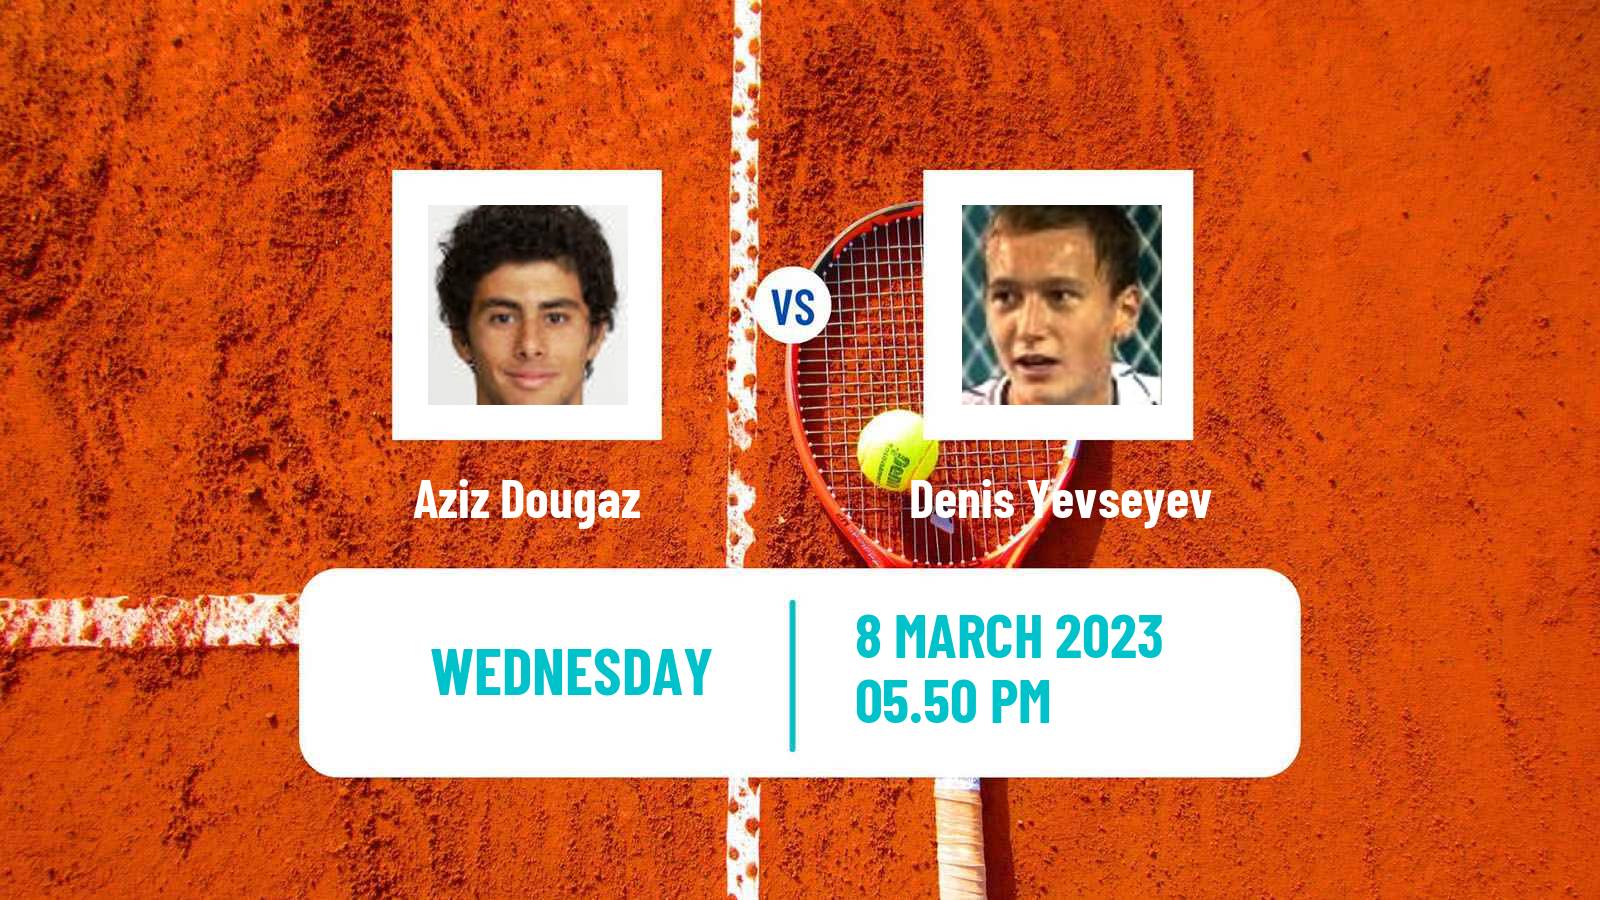 Tennis ATP Challenger Aziz Dougaz - Denis Yevseyev